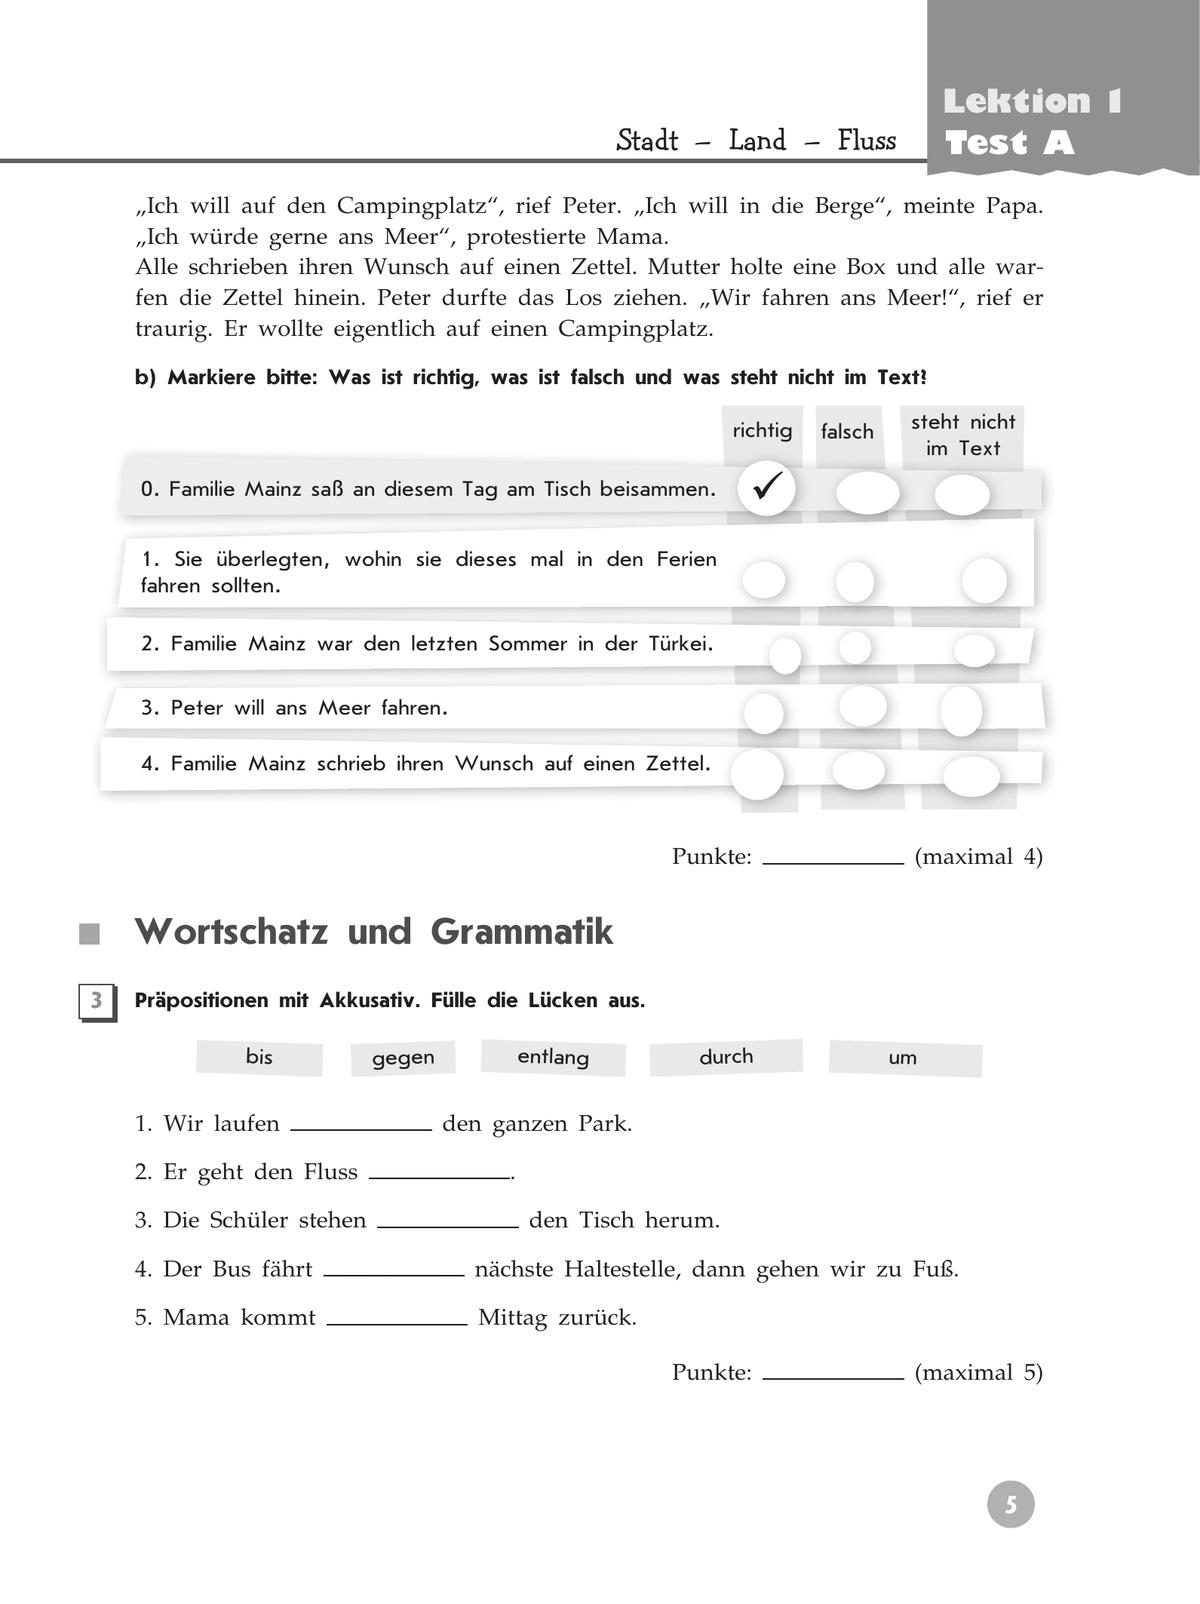 Немецкий язык. Контрольные задания. 5 класс 9